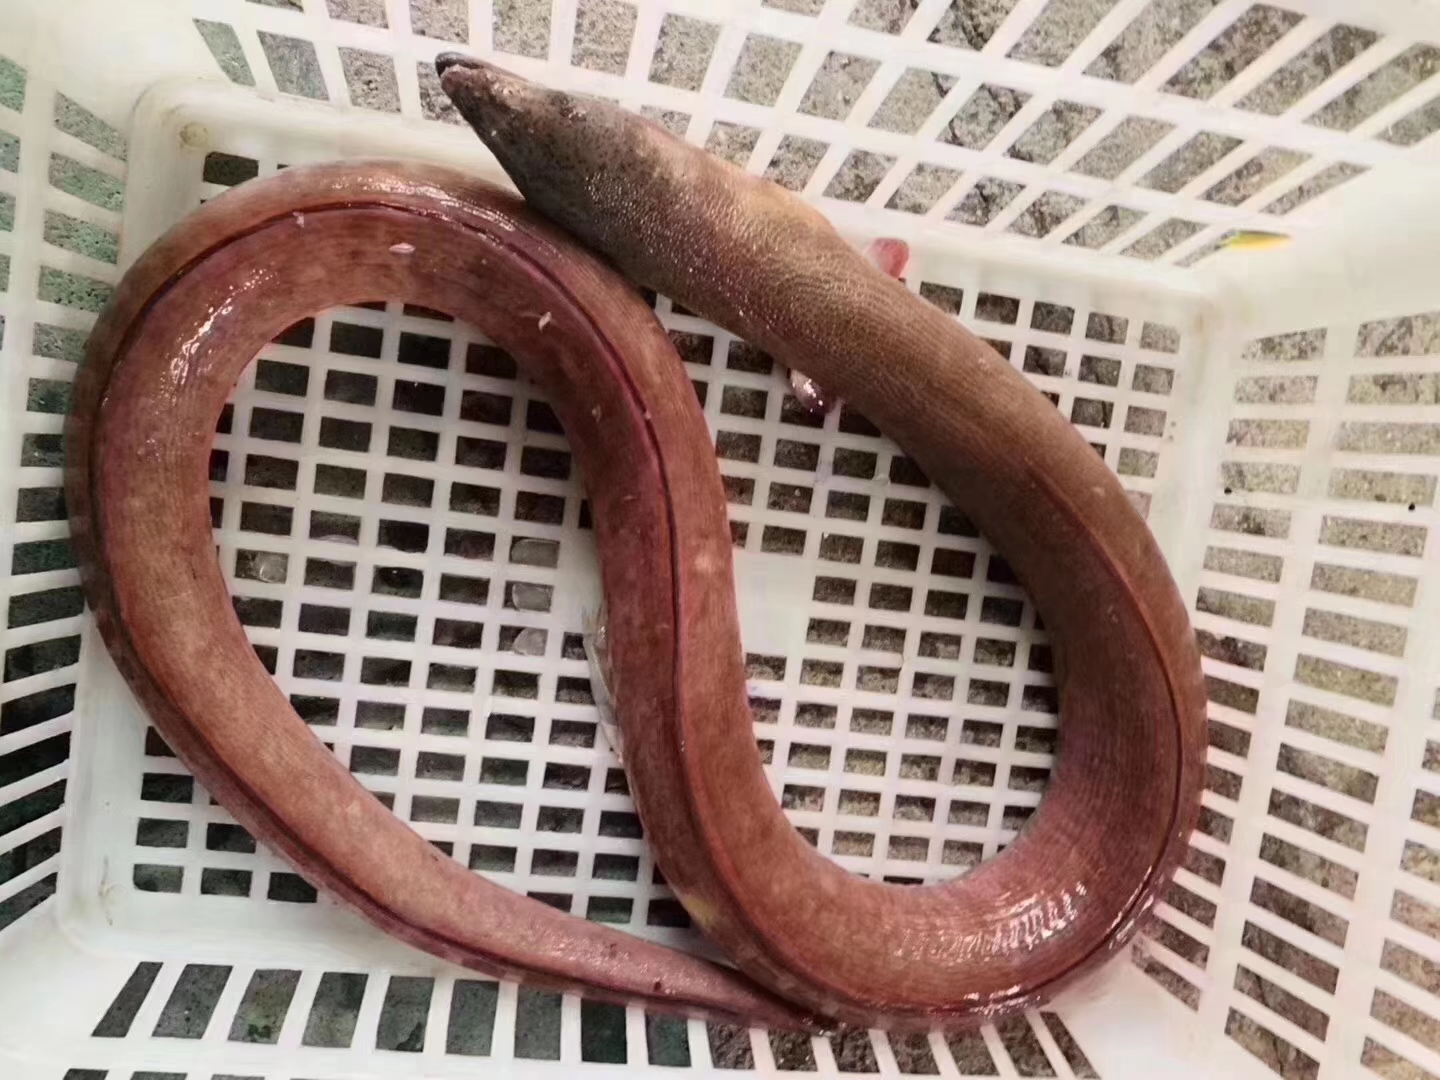 土龙是什么?"土龙"它的学名叫波露豆齿蛇鳗,是很好的滋养补品.